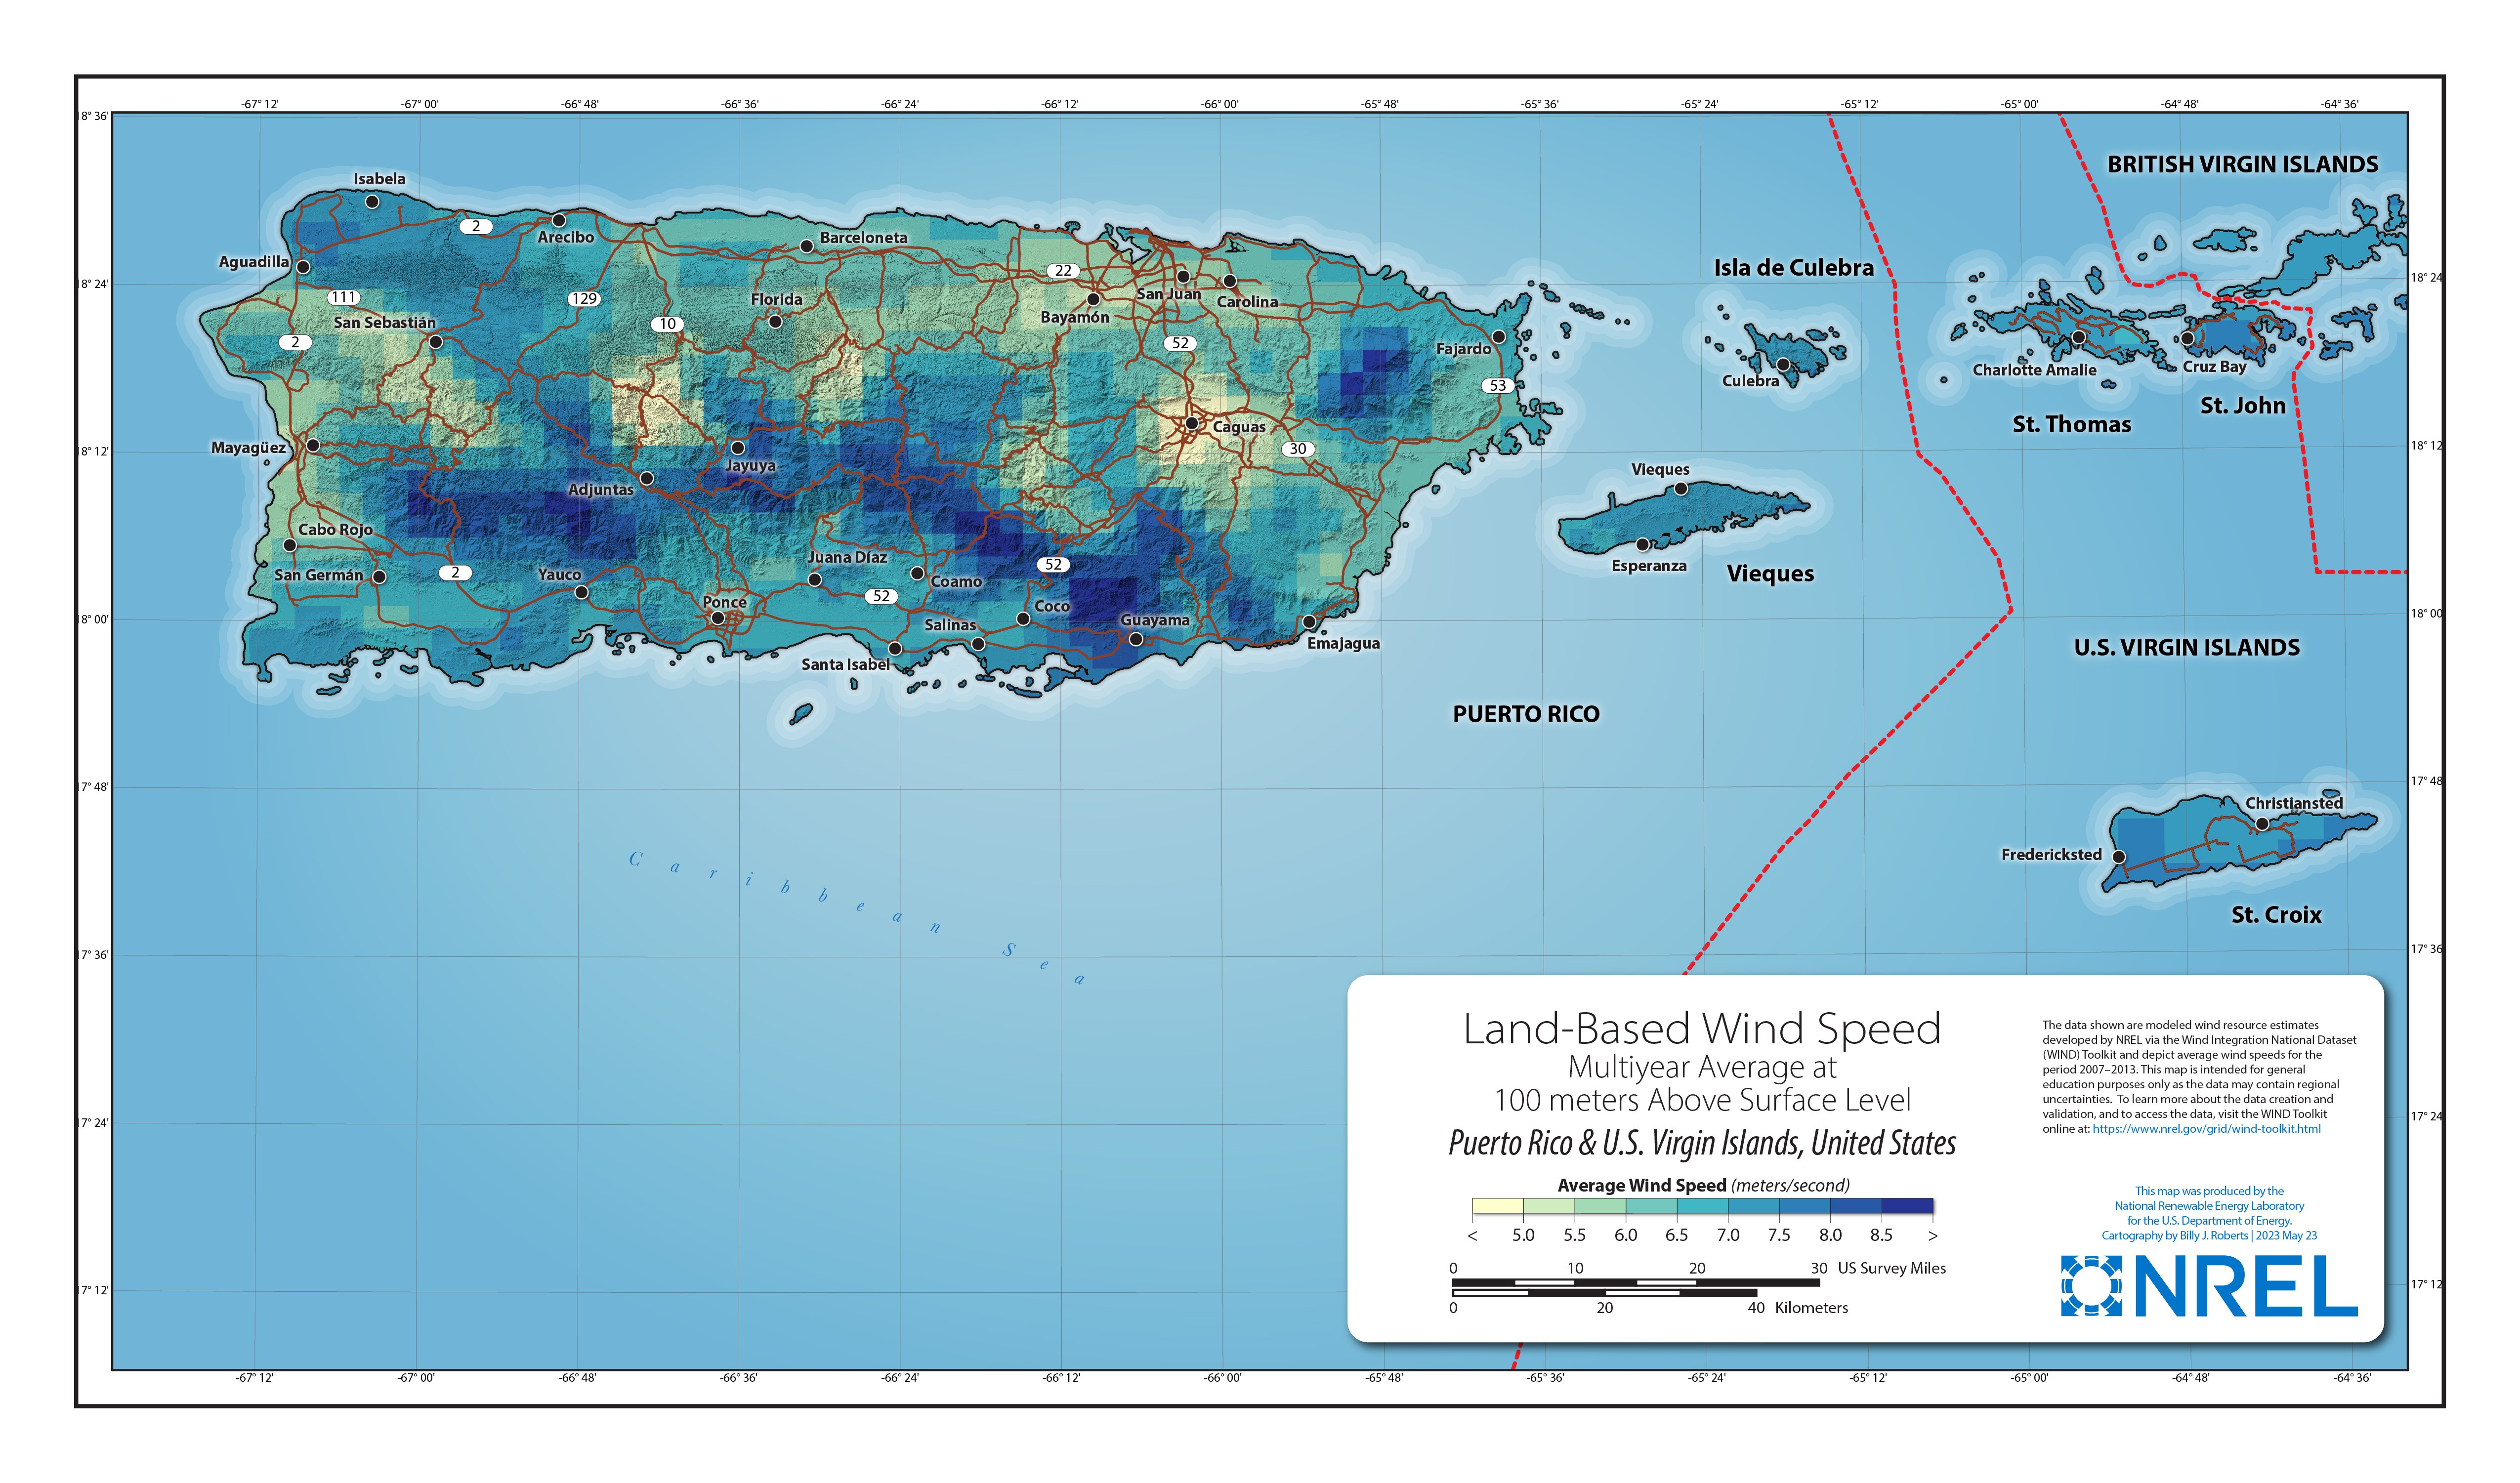 Puerto Rico-U.S. Virgin Islands Land-Based Wind Speed at 100 Meters